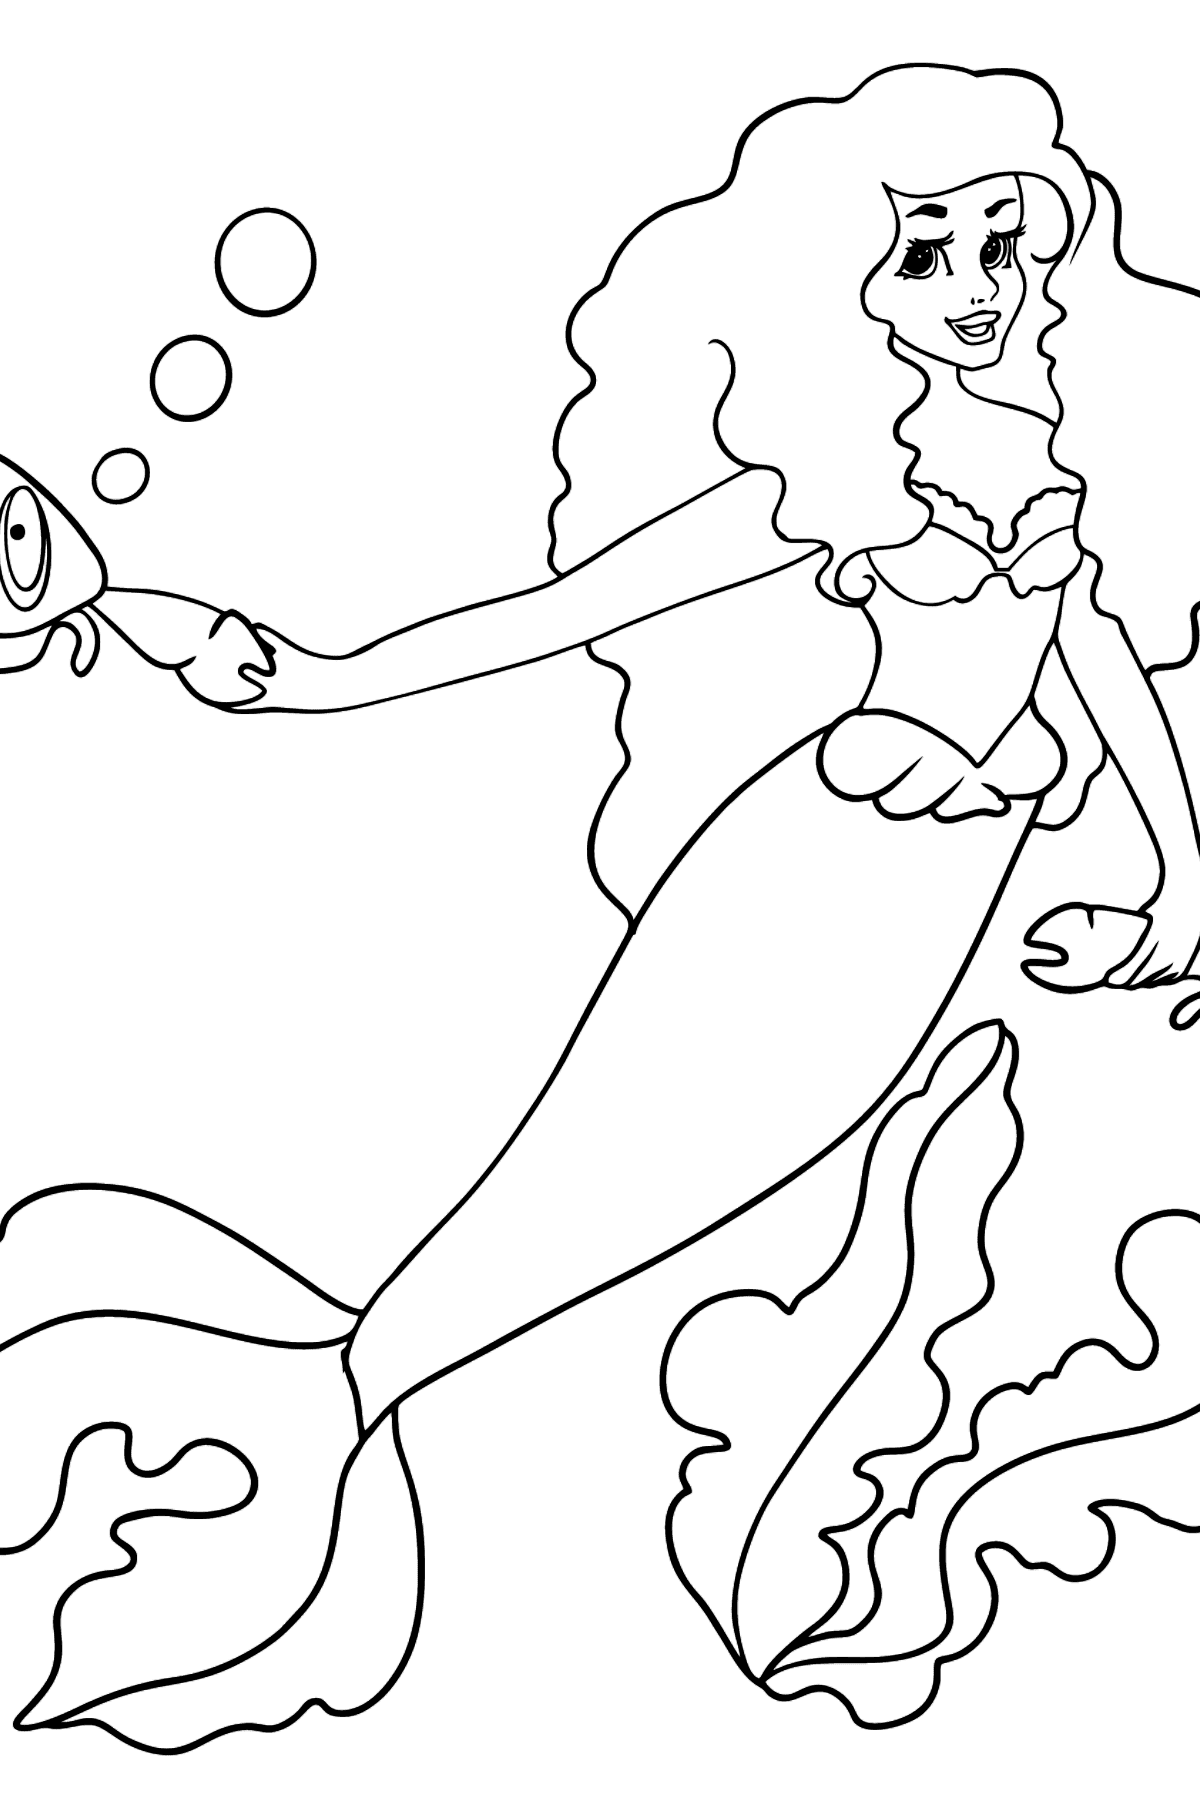 Dibujo para colorear Sirena y dos cangrejos - Dibujos para Colorear para Niños